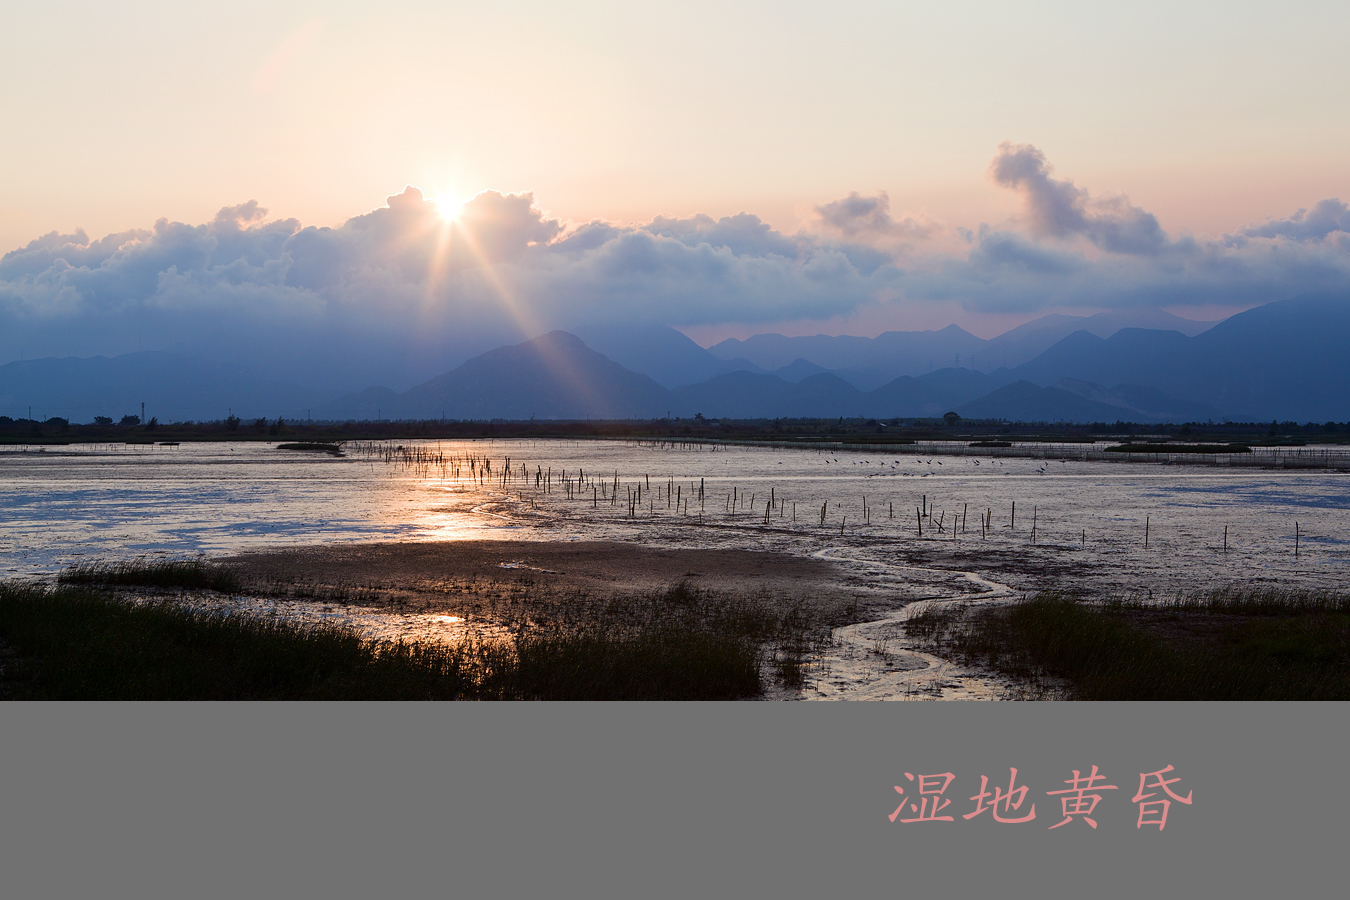 海陵岛红树林国家湿地公园位于广东省阳江市海陵岛神前湾畔